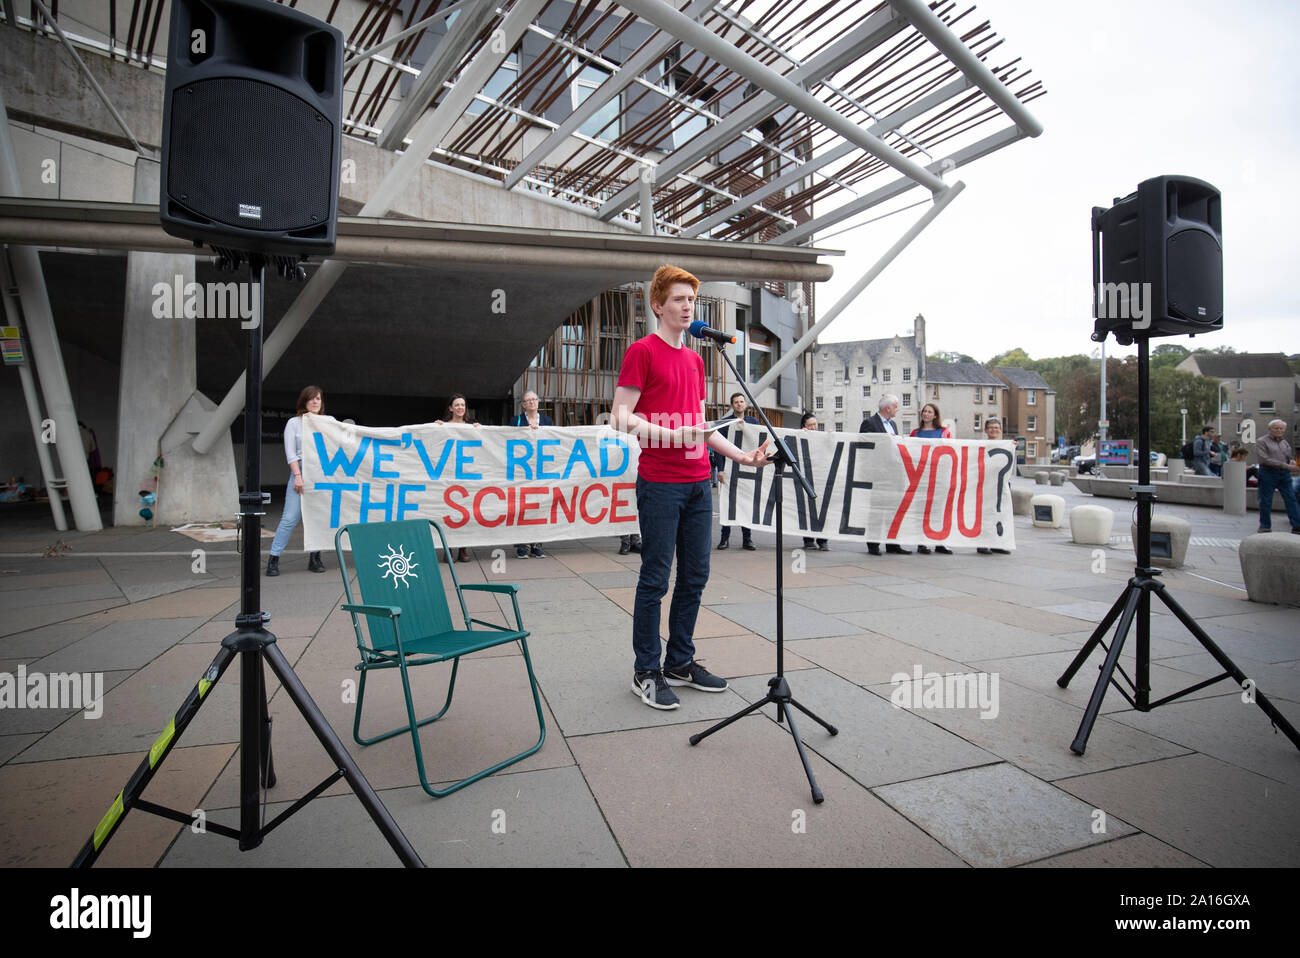 Sandy Boyd, der schottischen Jugend Klima Streik, außerhalb des schottischen Parlaments in Edinburgh vor MSPs Ihre endgültige Abstimmung über Schottland's neue Klimawandel Bill Casting. Boyd lesen Sie die Sehenswürdigkeiten UN-IPCC-Sonderbericht über 1.5C, die besagt, dass Maßnahmen dringend muss innerhalb der nächsten zehn Jahre erhöhen. Stockfoto